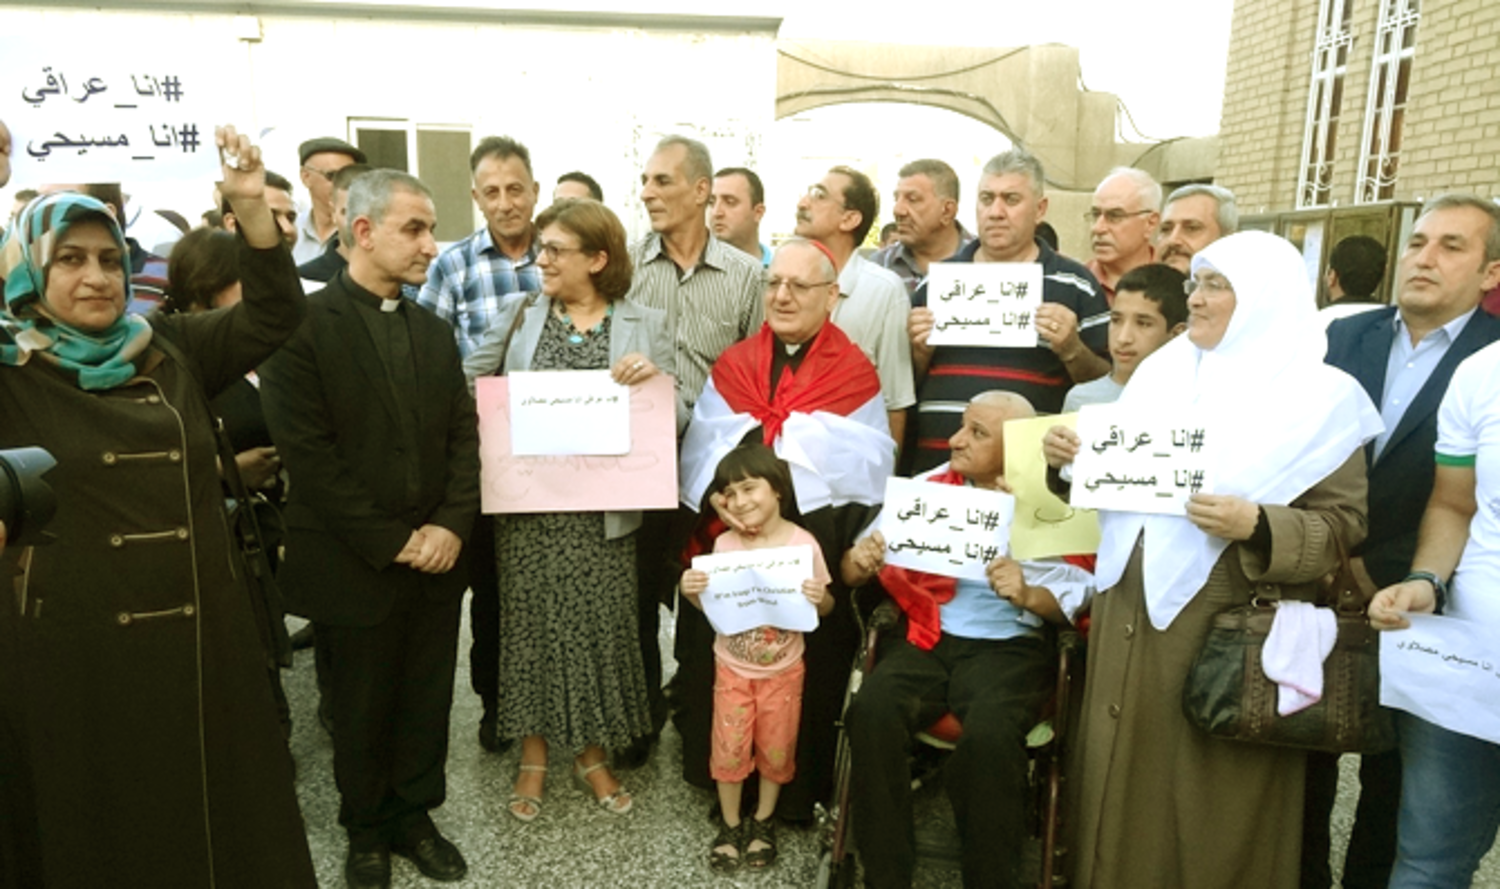 عراقيون مسيحيون خلال وقفة احتجاجية (الموقع الرسمي للبطريركية الكلدانية)